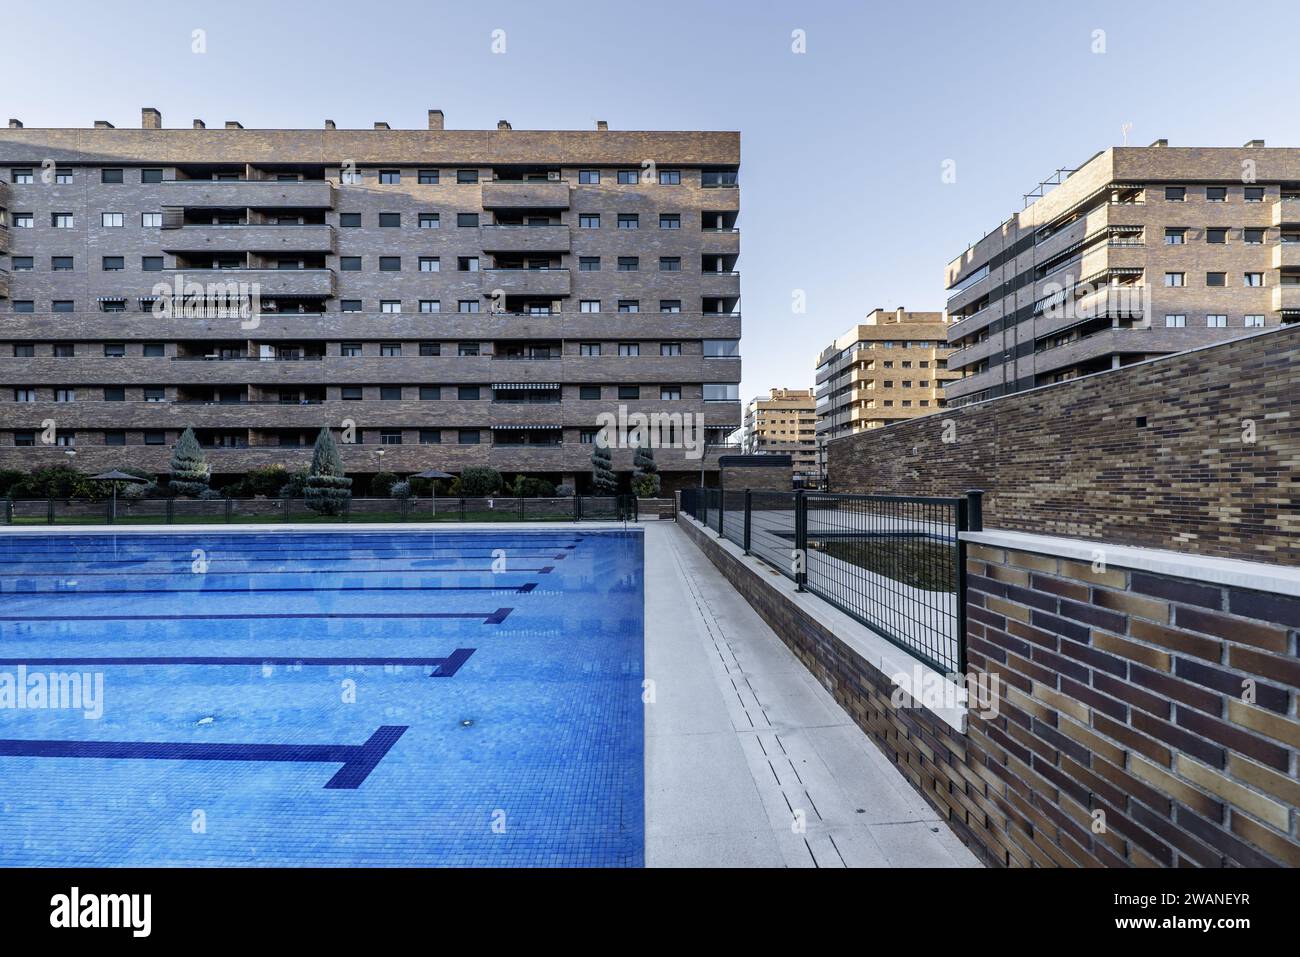 Ein großer Swimmingpool in der Mitte der Gemeinschaftsbereiche einer Wohnsiedlung, gebaut mit dekorativen braunen Ziegeln Stockfoto